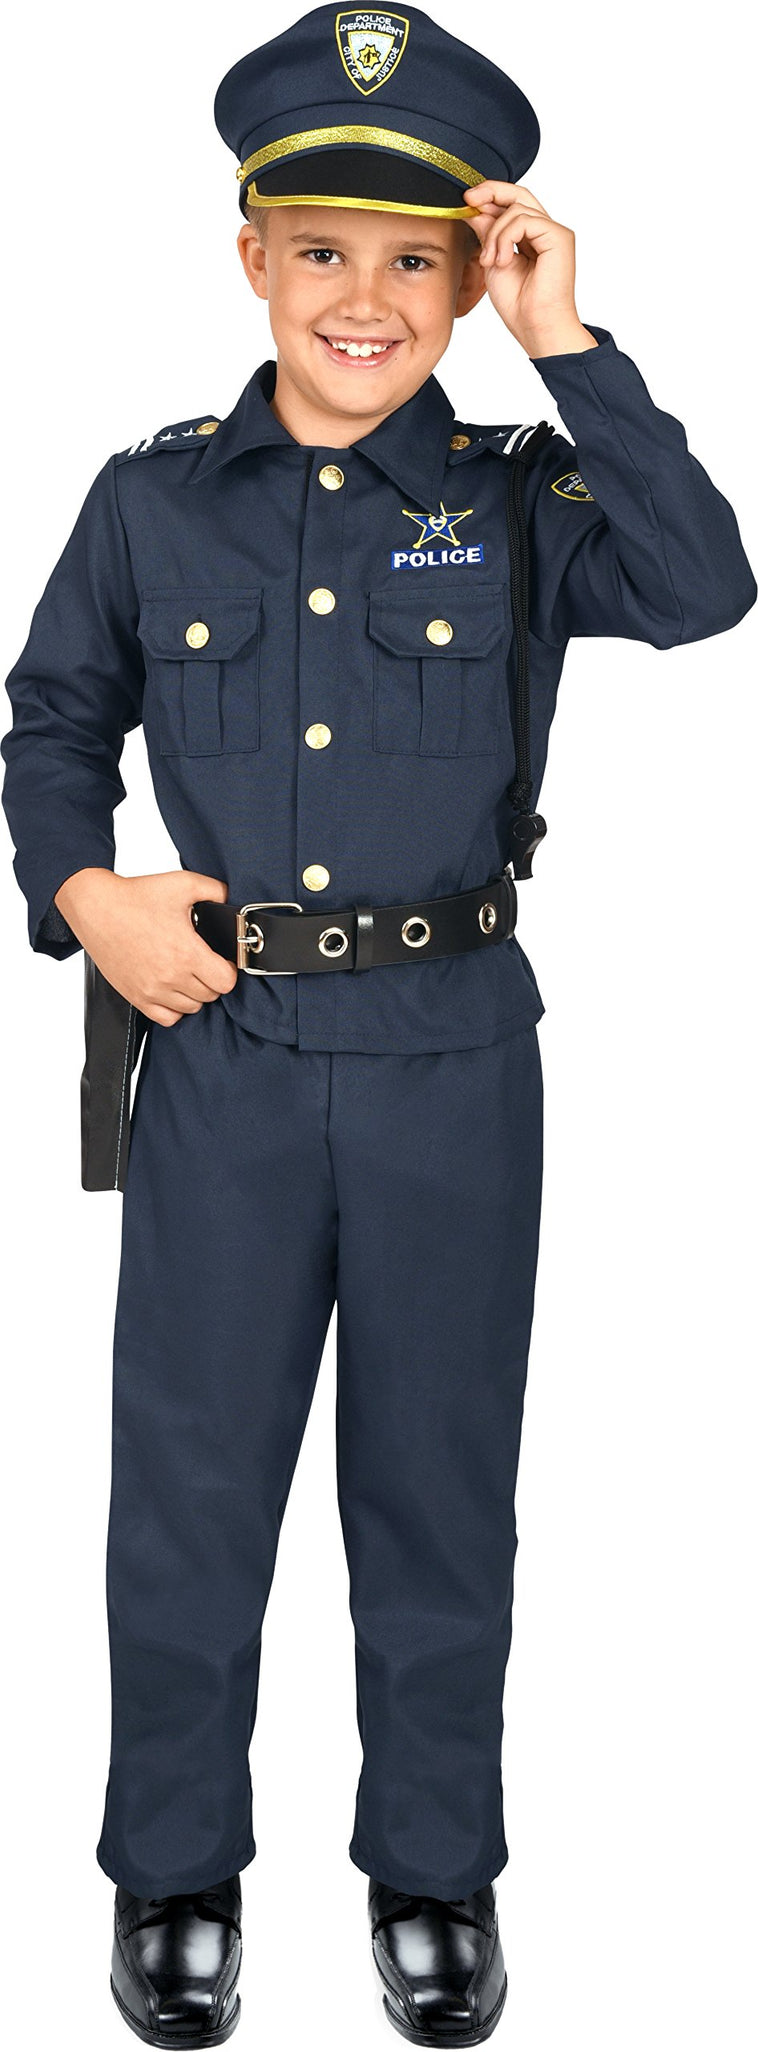 Kangaroo's Deluxe Boys Police Costume for Kids